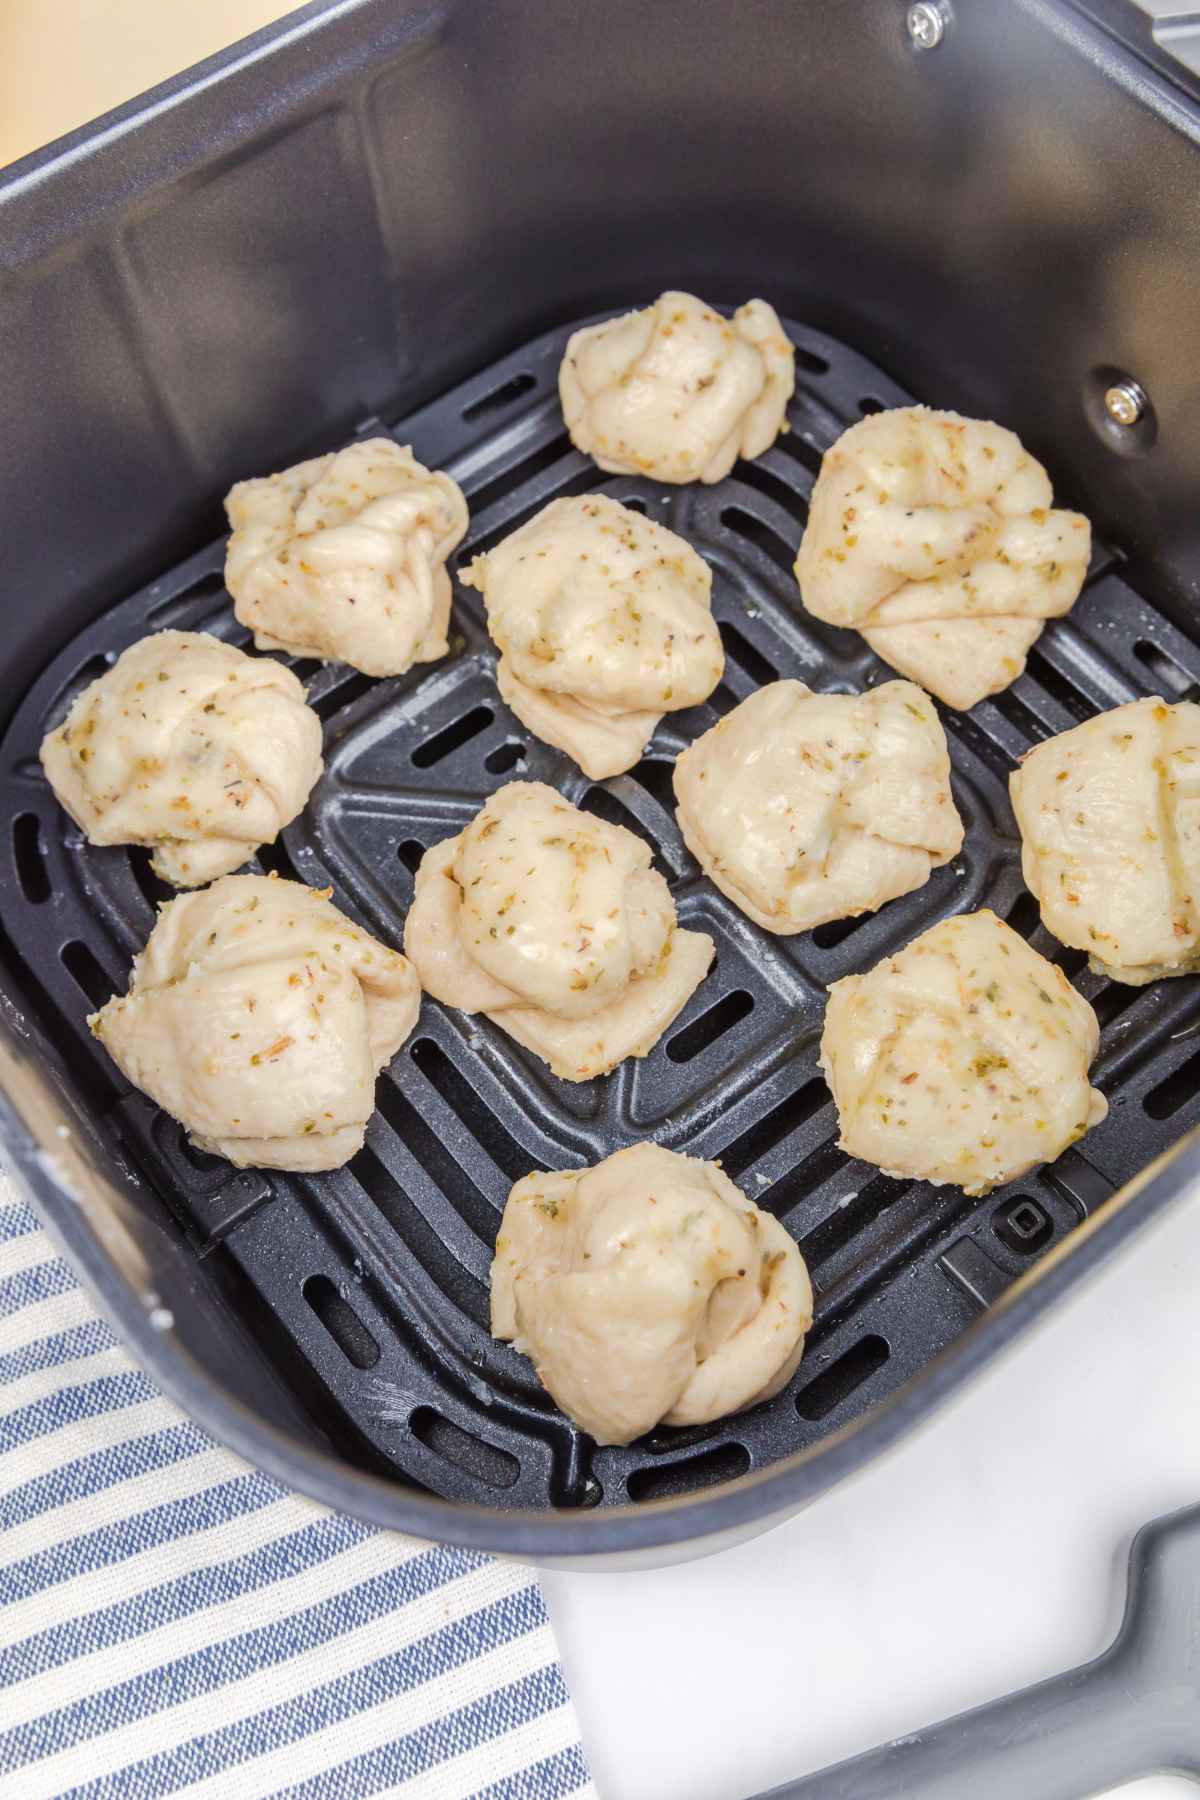 Seasoned dough knots in an air fryer basket.